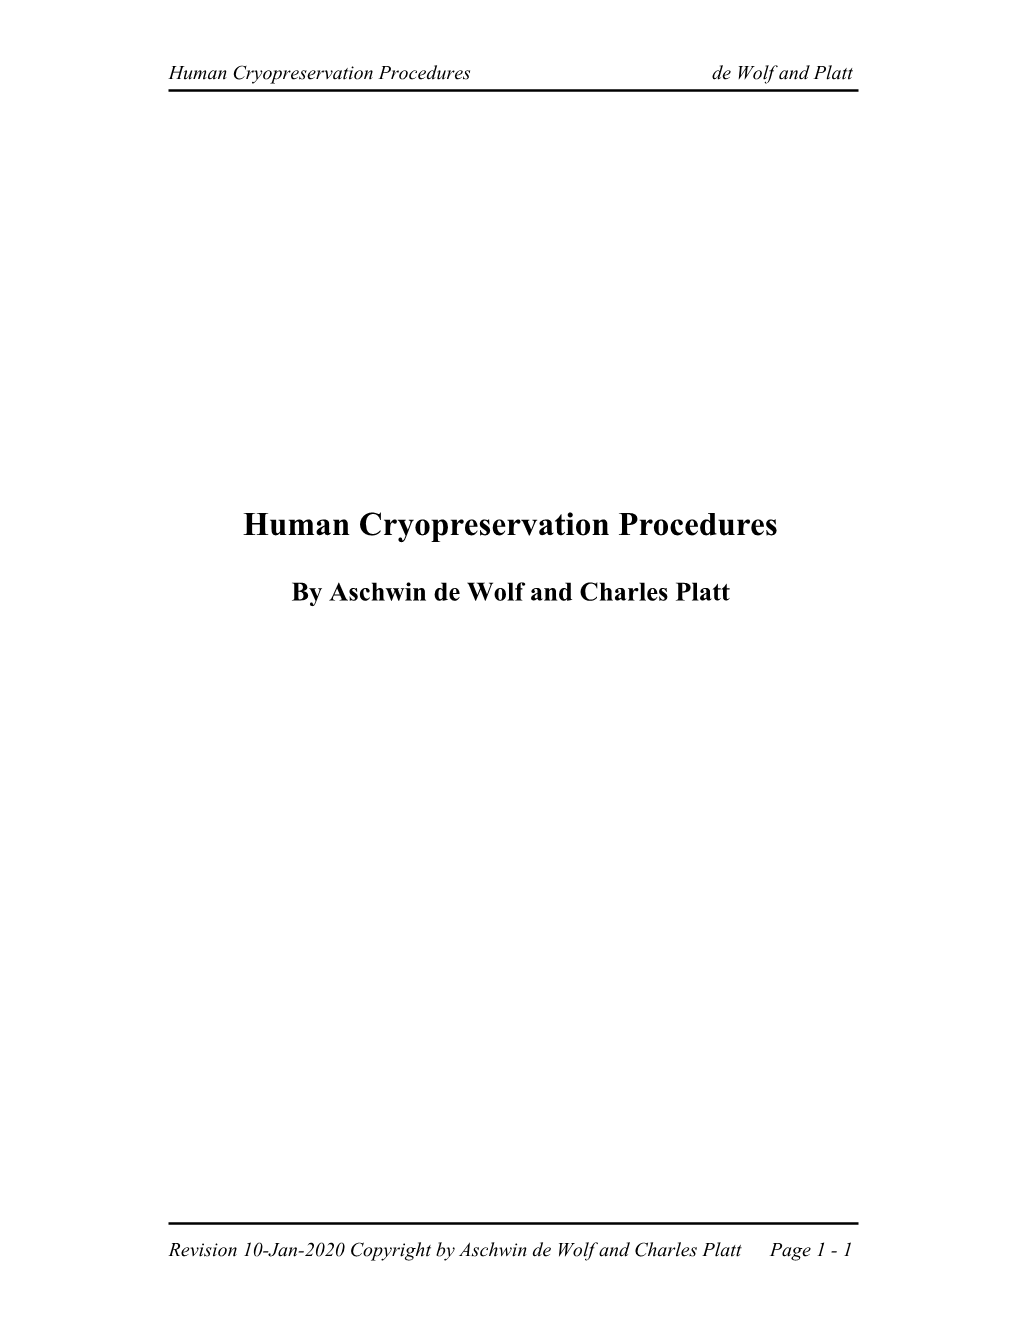 Human Cryopreservation Procedures De Wolf and Platt